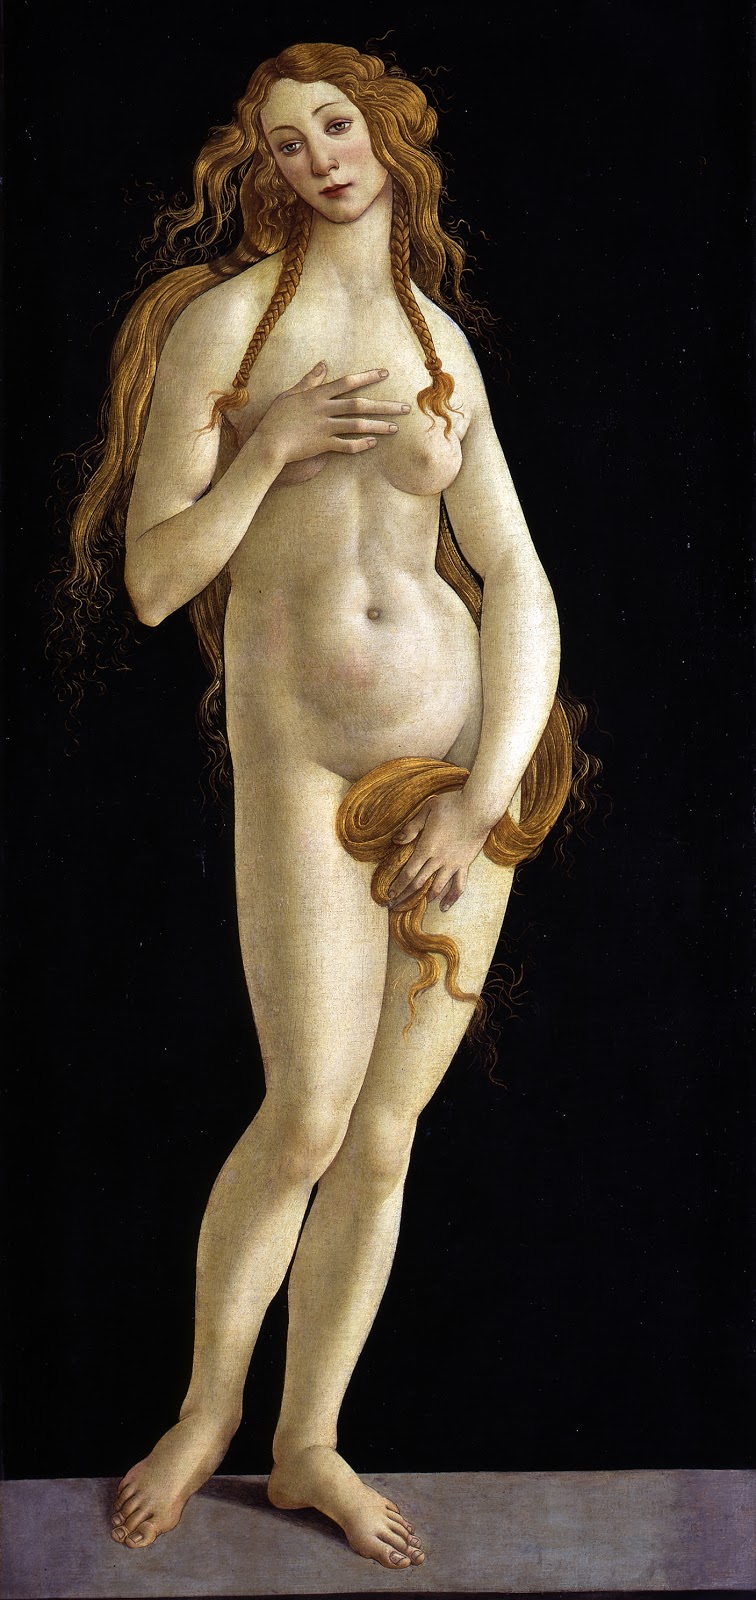 Sandro+Botticelli-1445-1510 (303).jpg